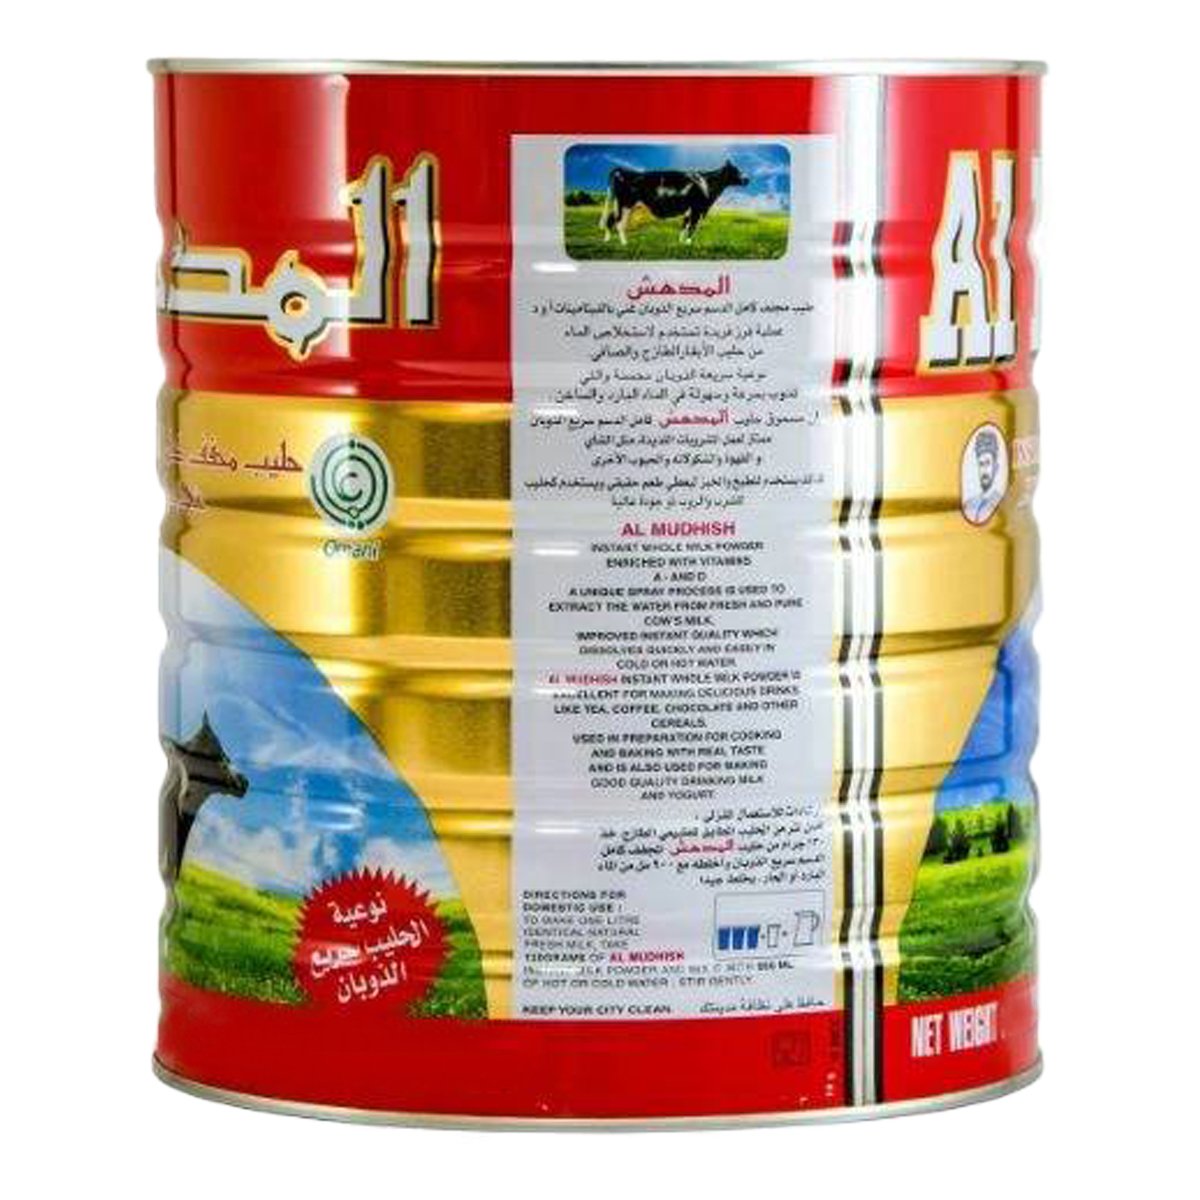 Al Mudhish Milk Powder Tin 400 g